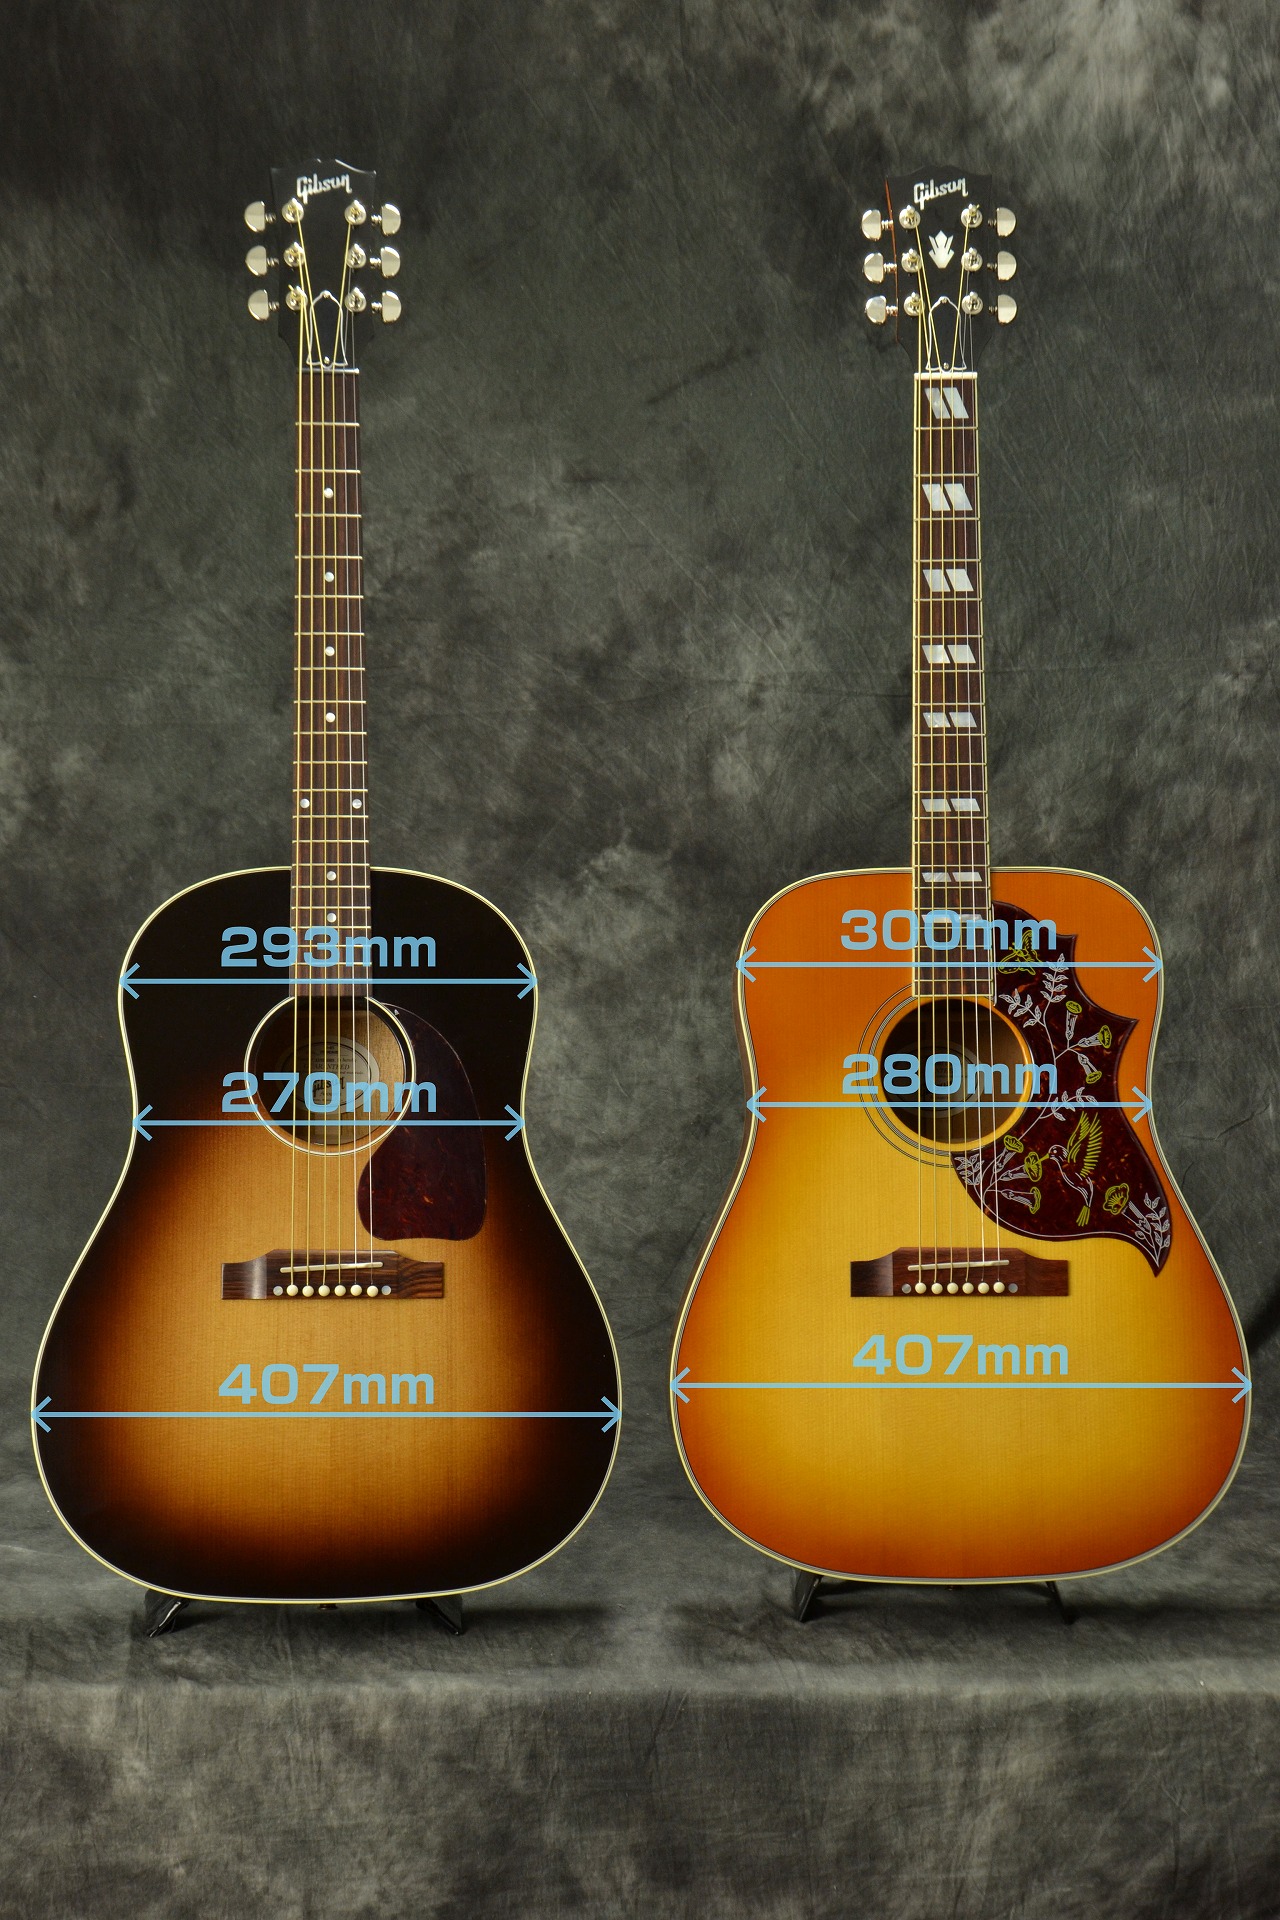 Gibsonアコースティックギター 「ラウンドショルダー」vs「スクエア 